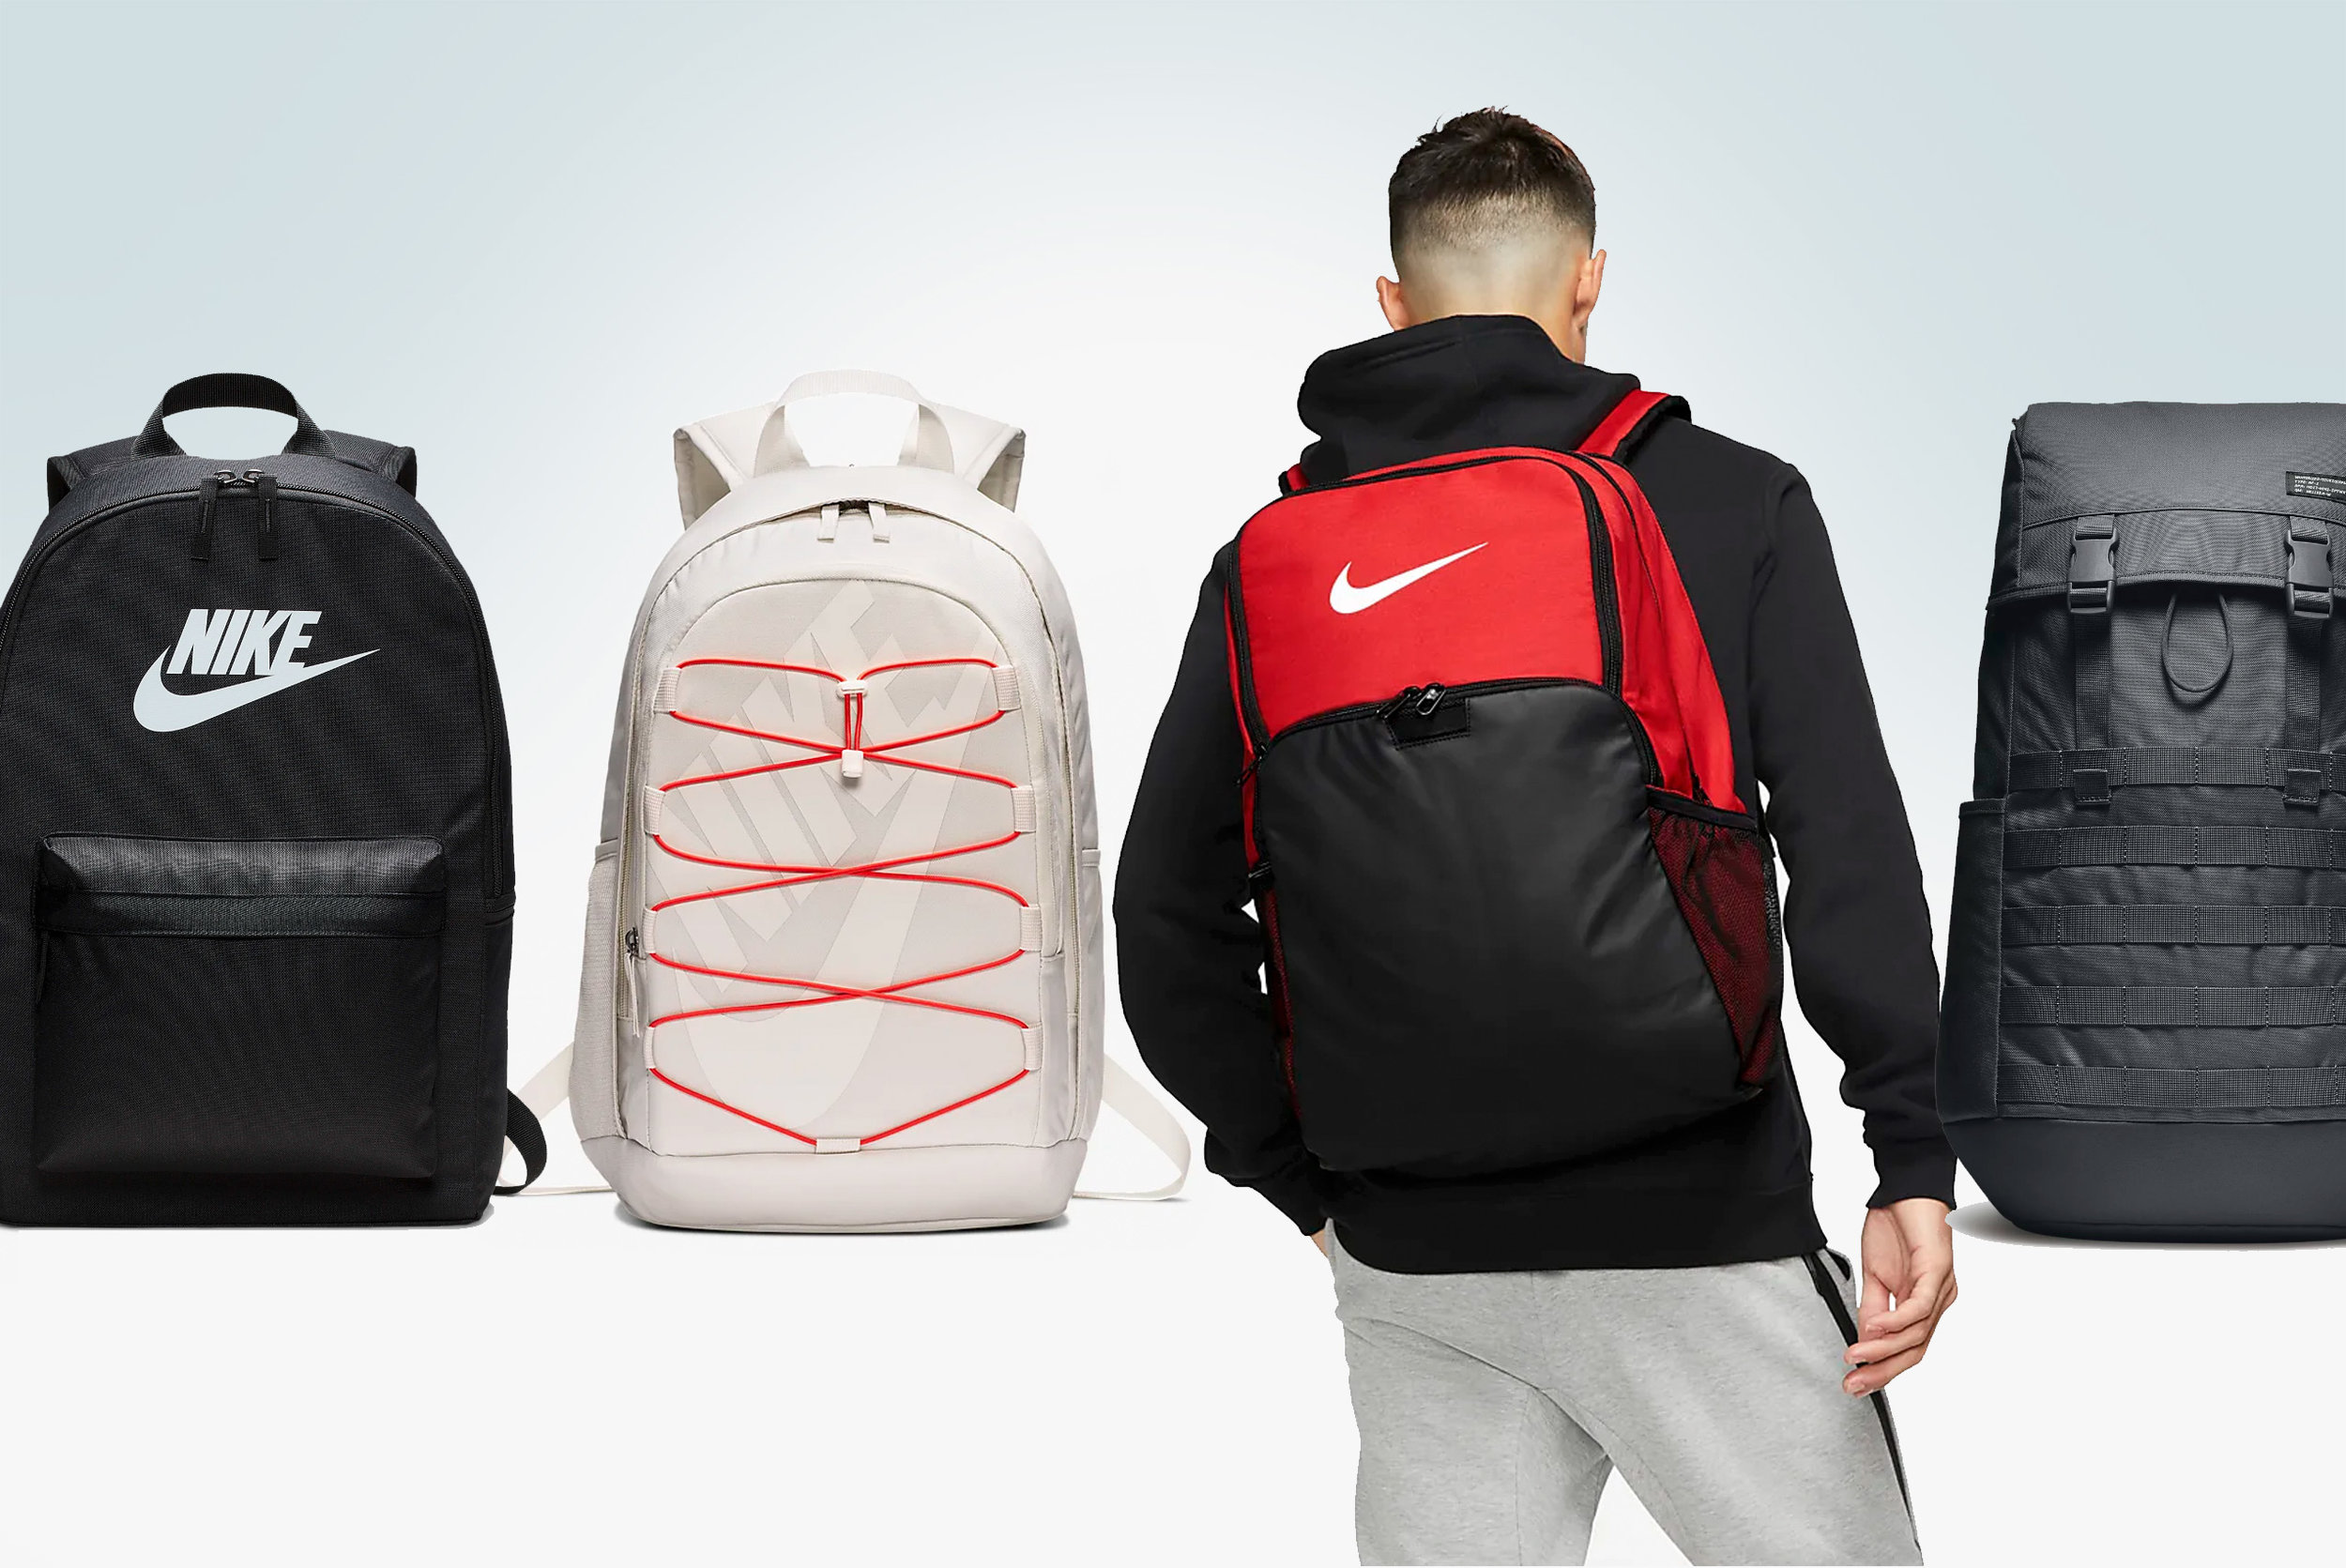 Best Nike Backpacks for School 